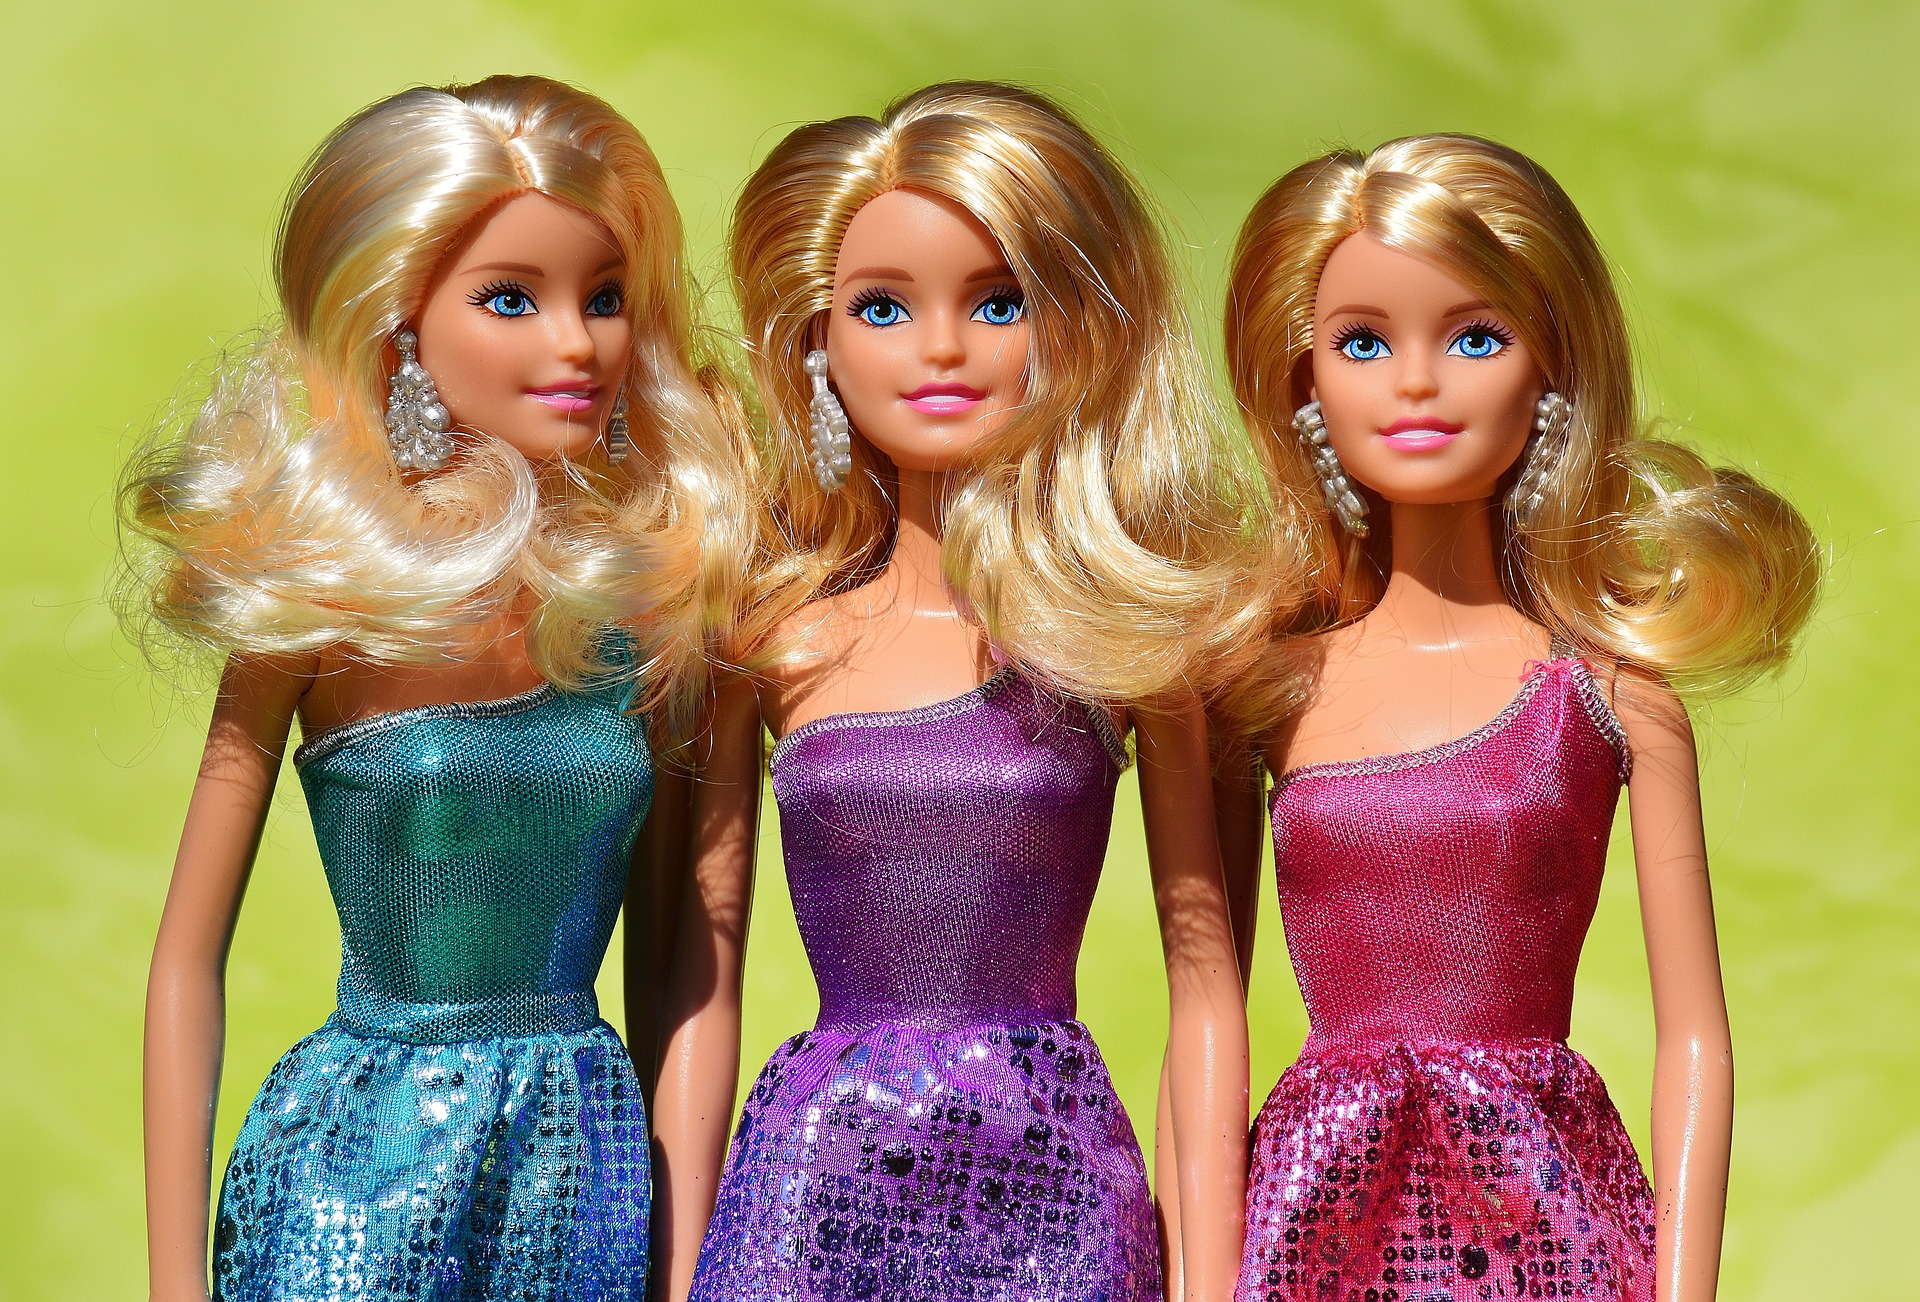 Lecciones de Marketing con Barbie